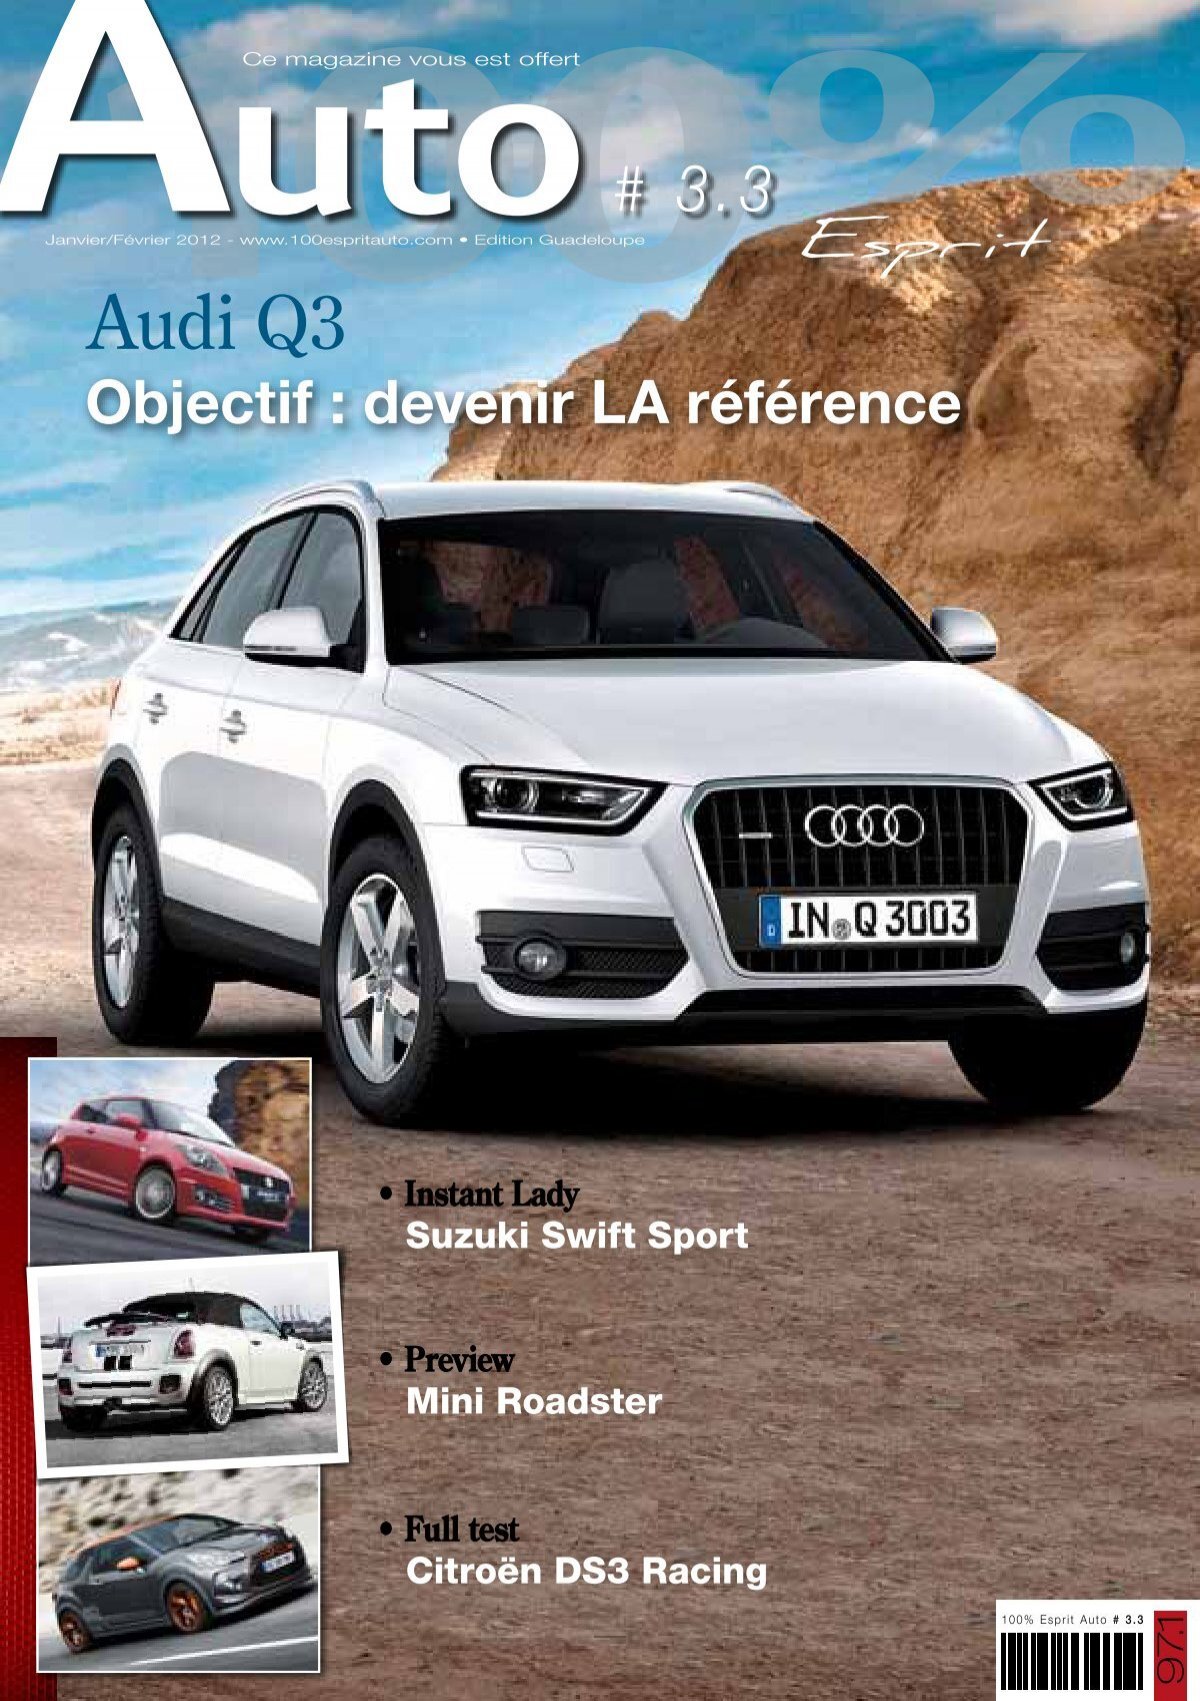 Audi Q3 - Magazine 100% esprit auto